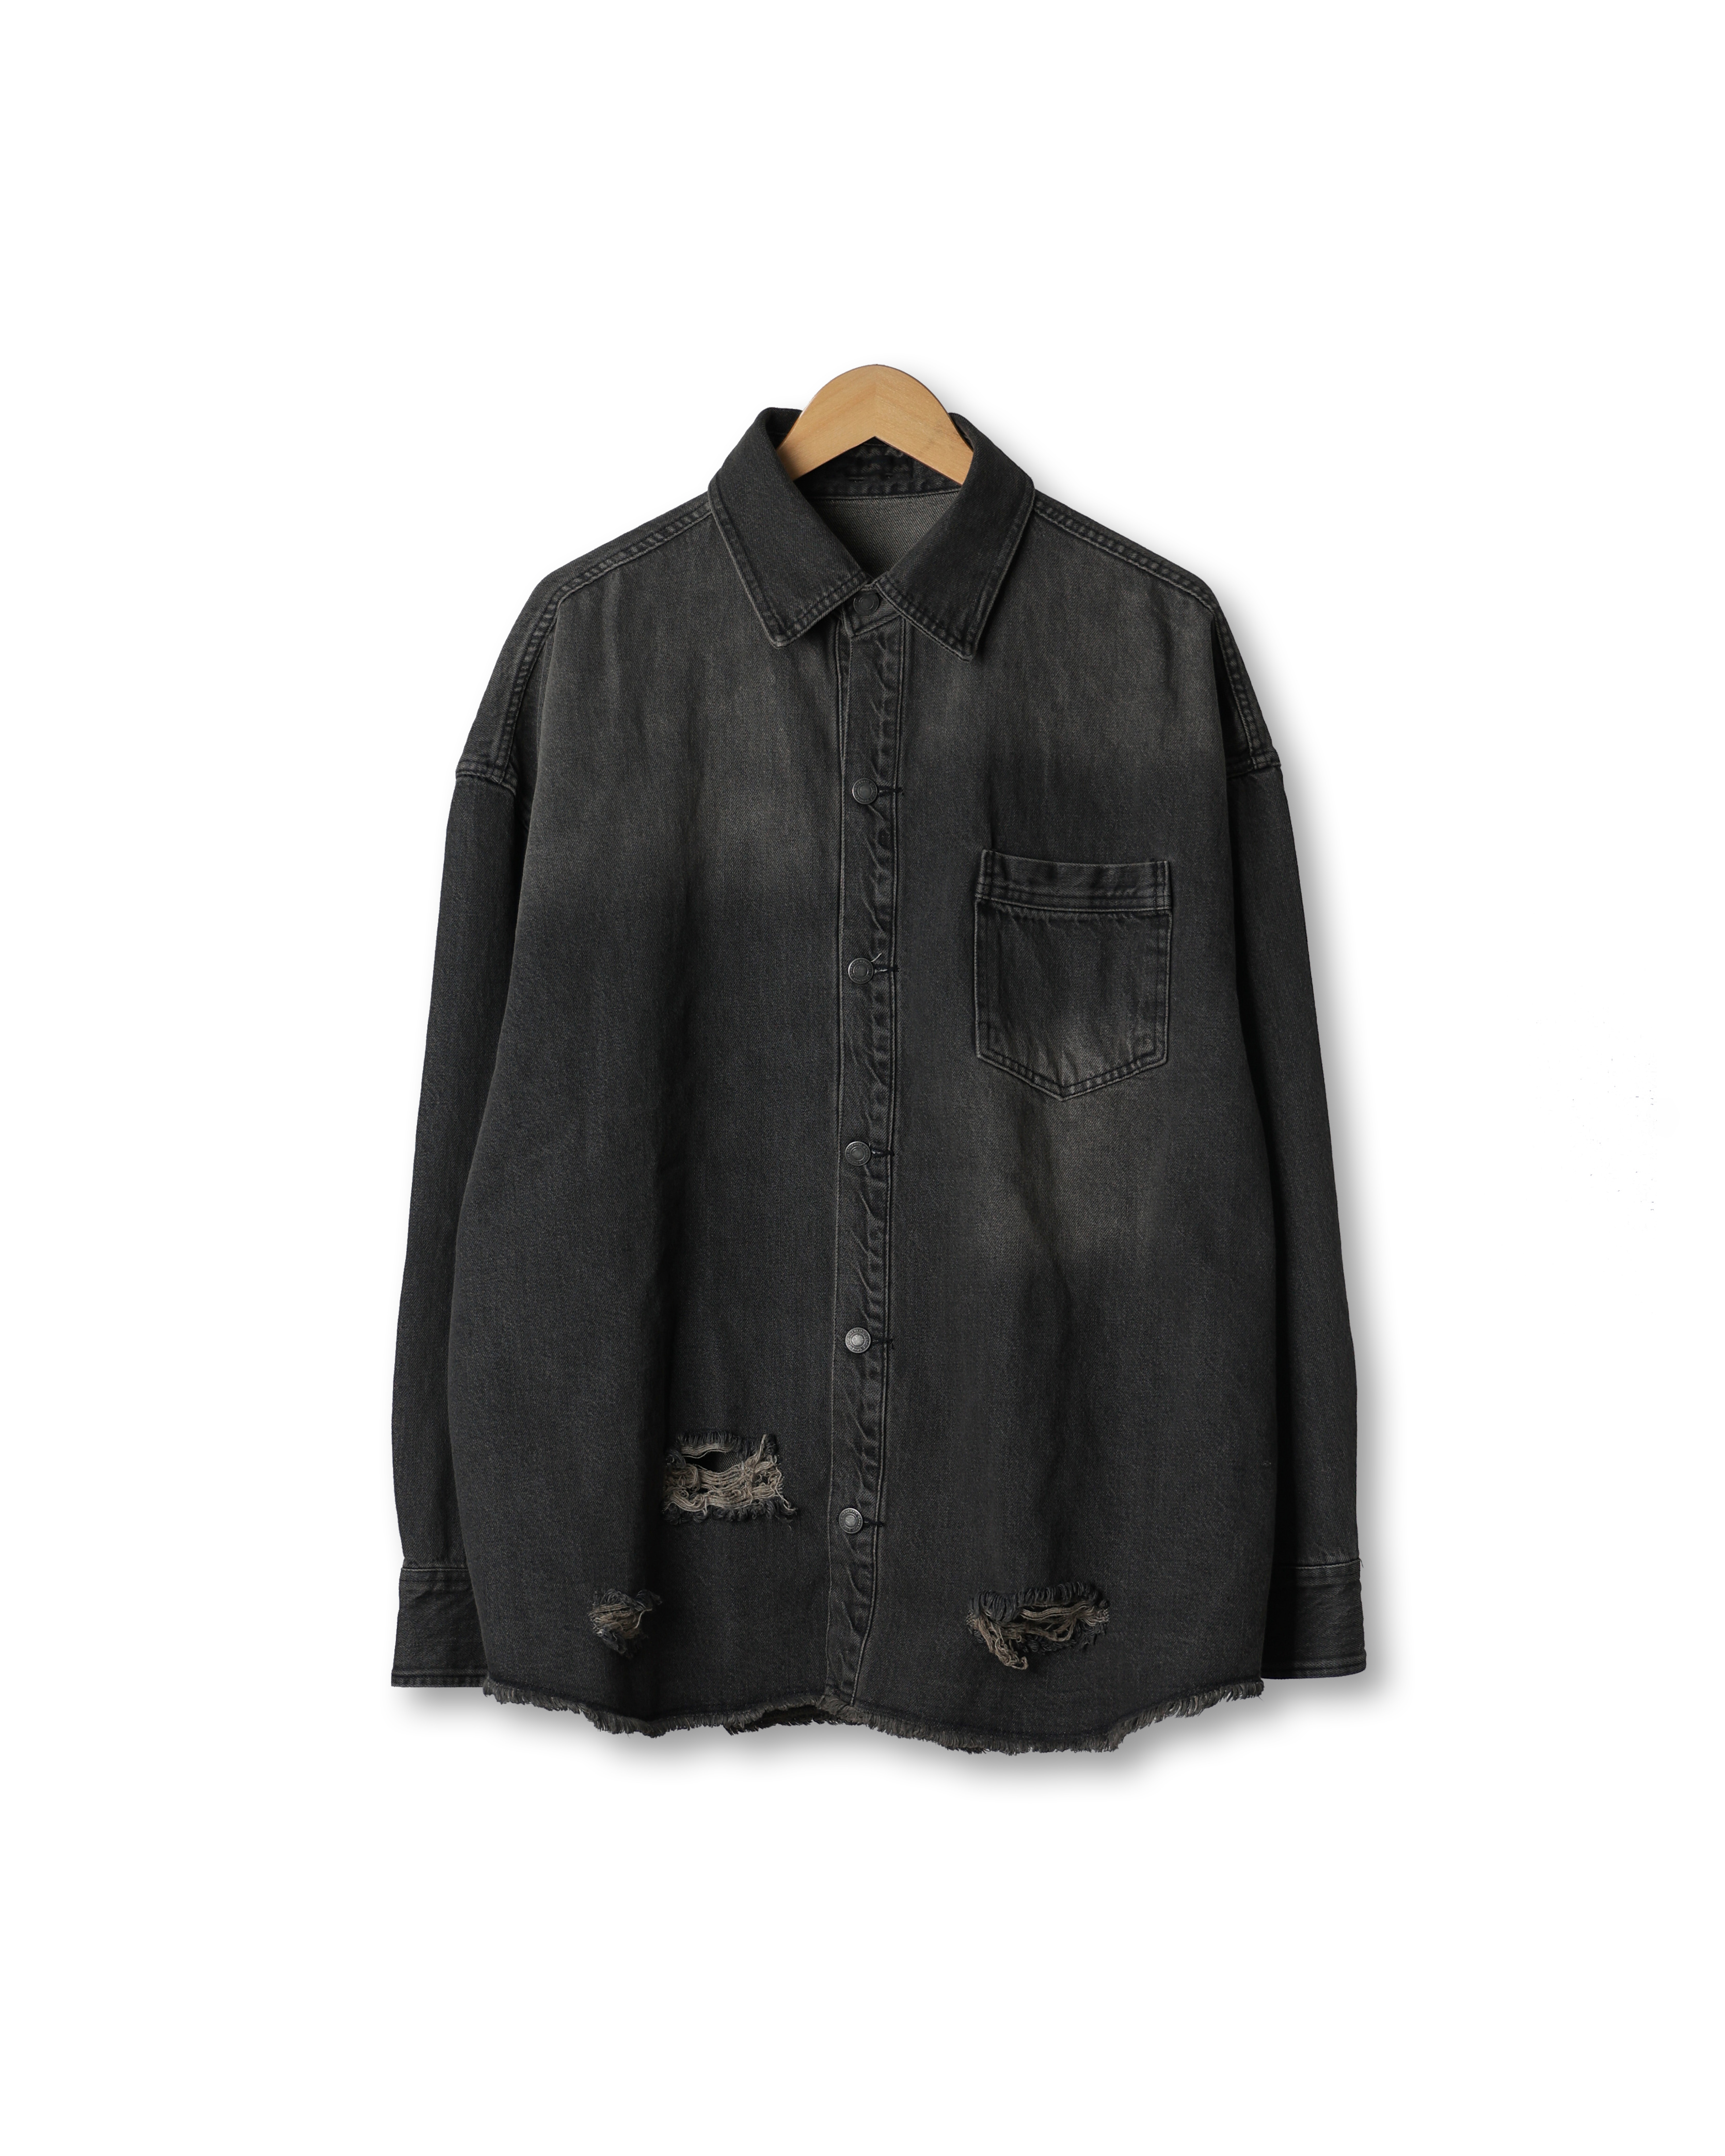 OTHER 365 Dyeing Vintage Denim Jacket (Black Denim)